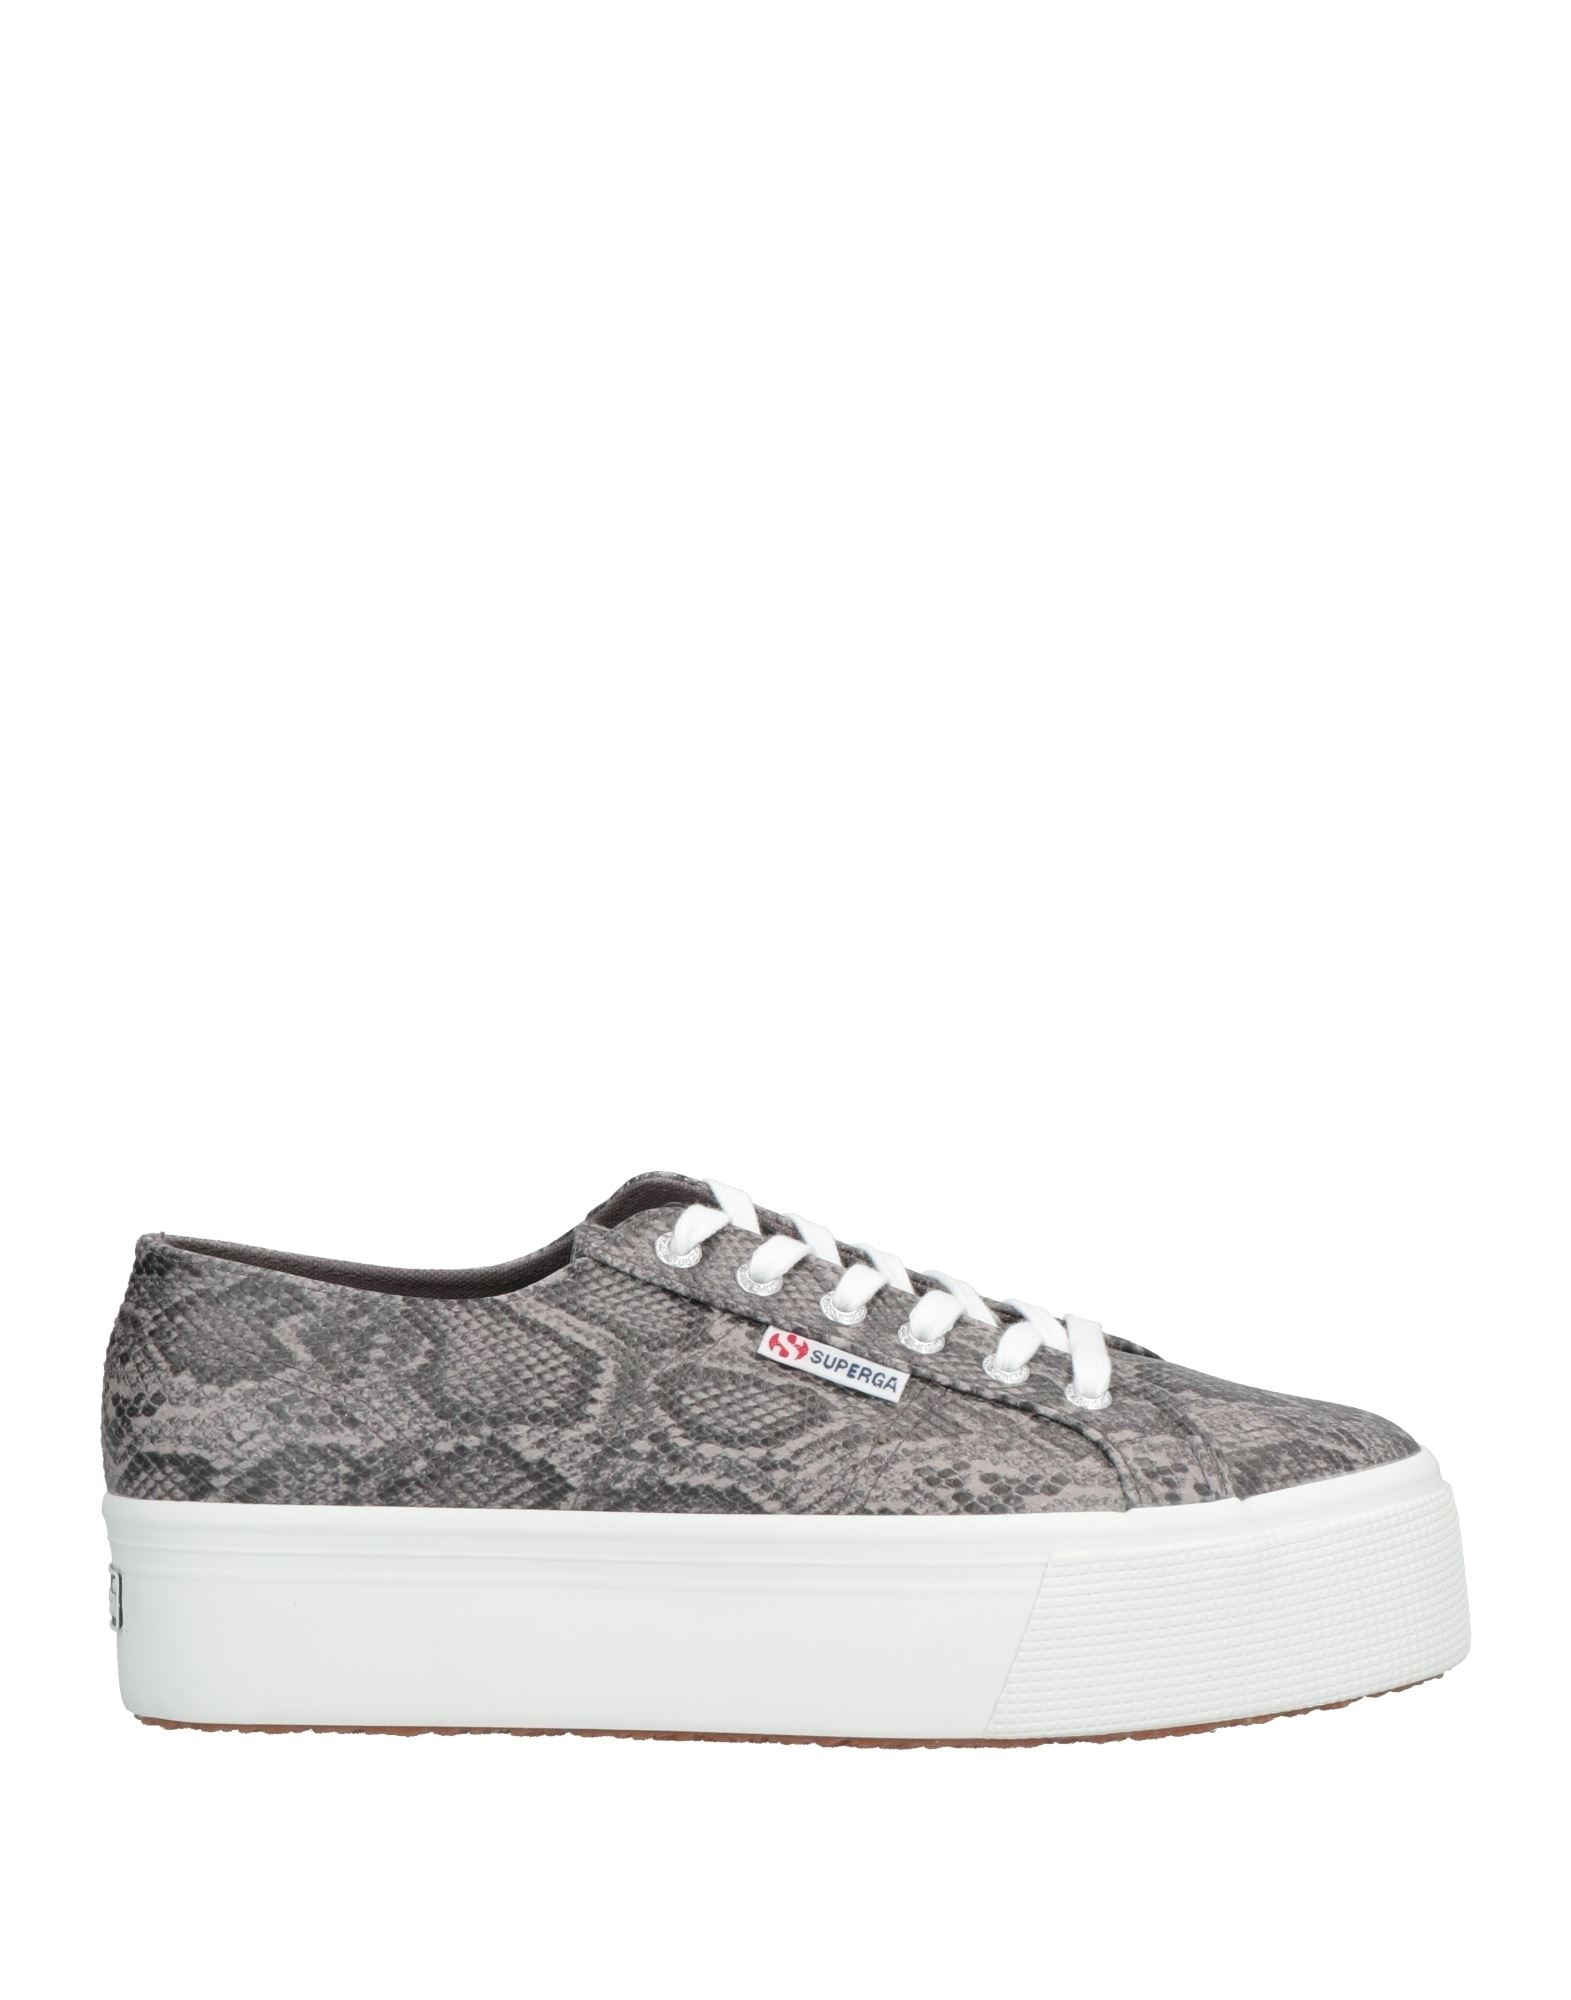 Superga Sneakers In Grey